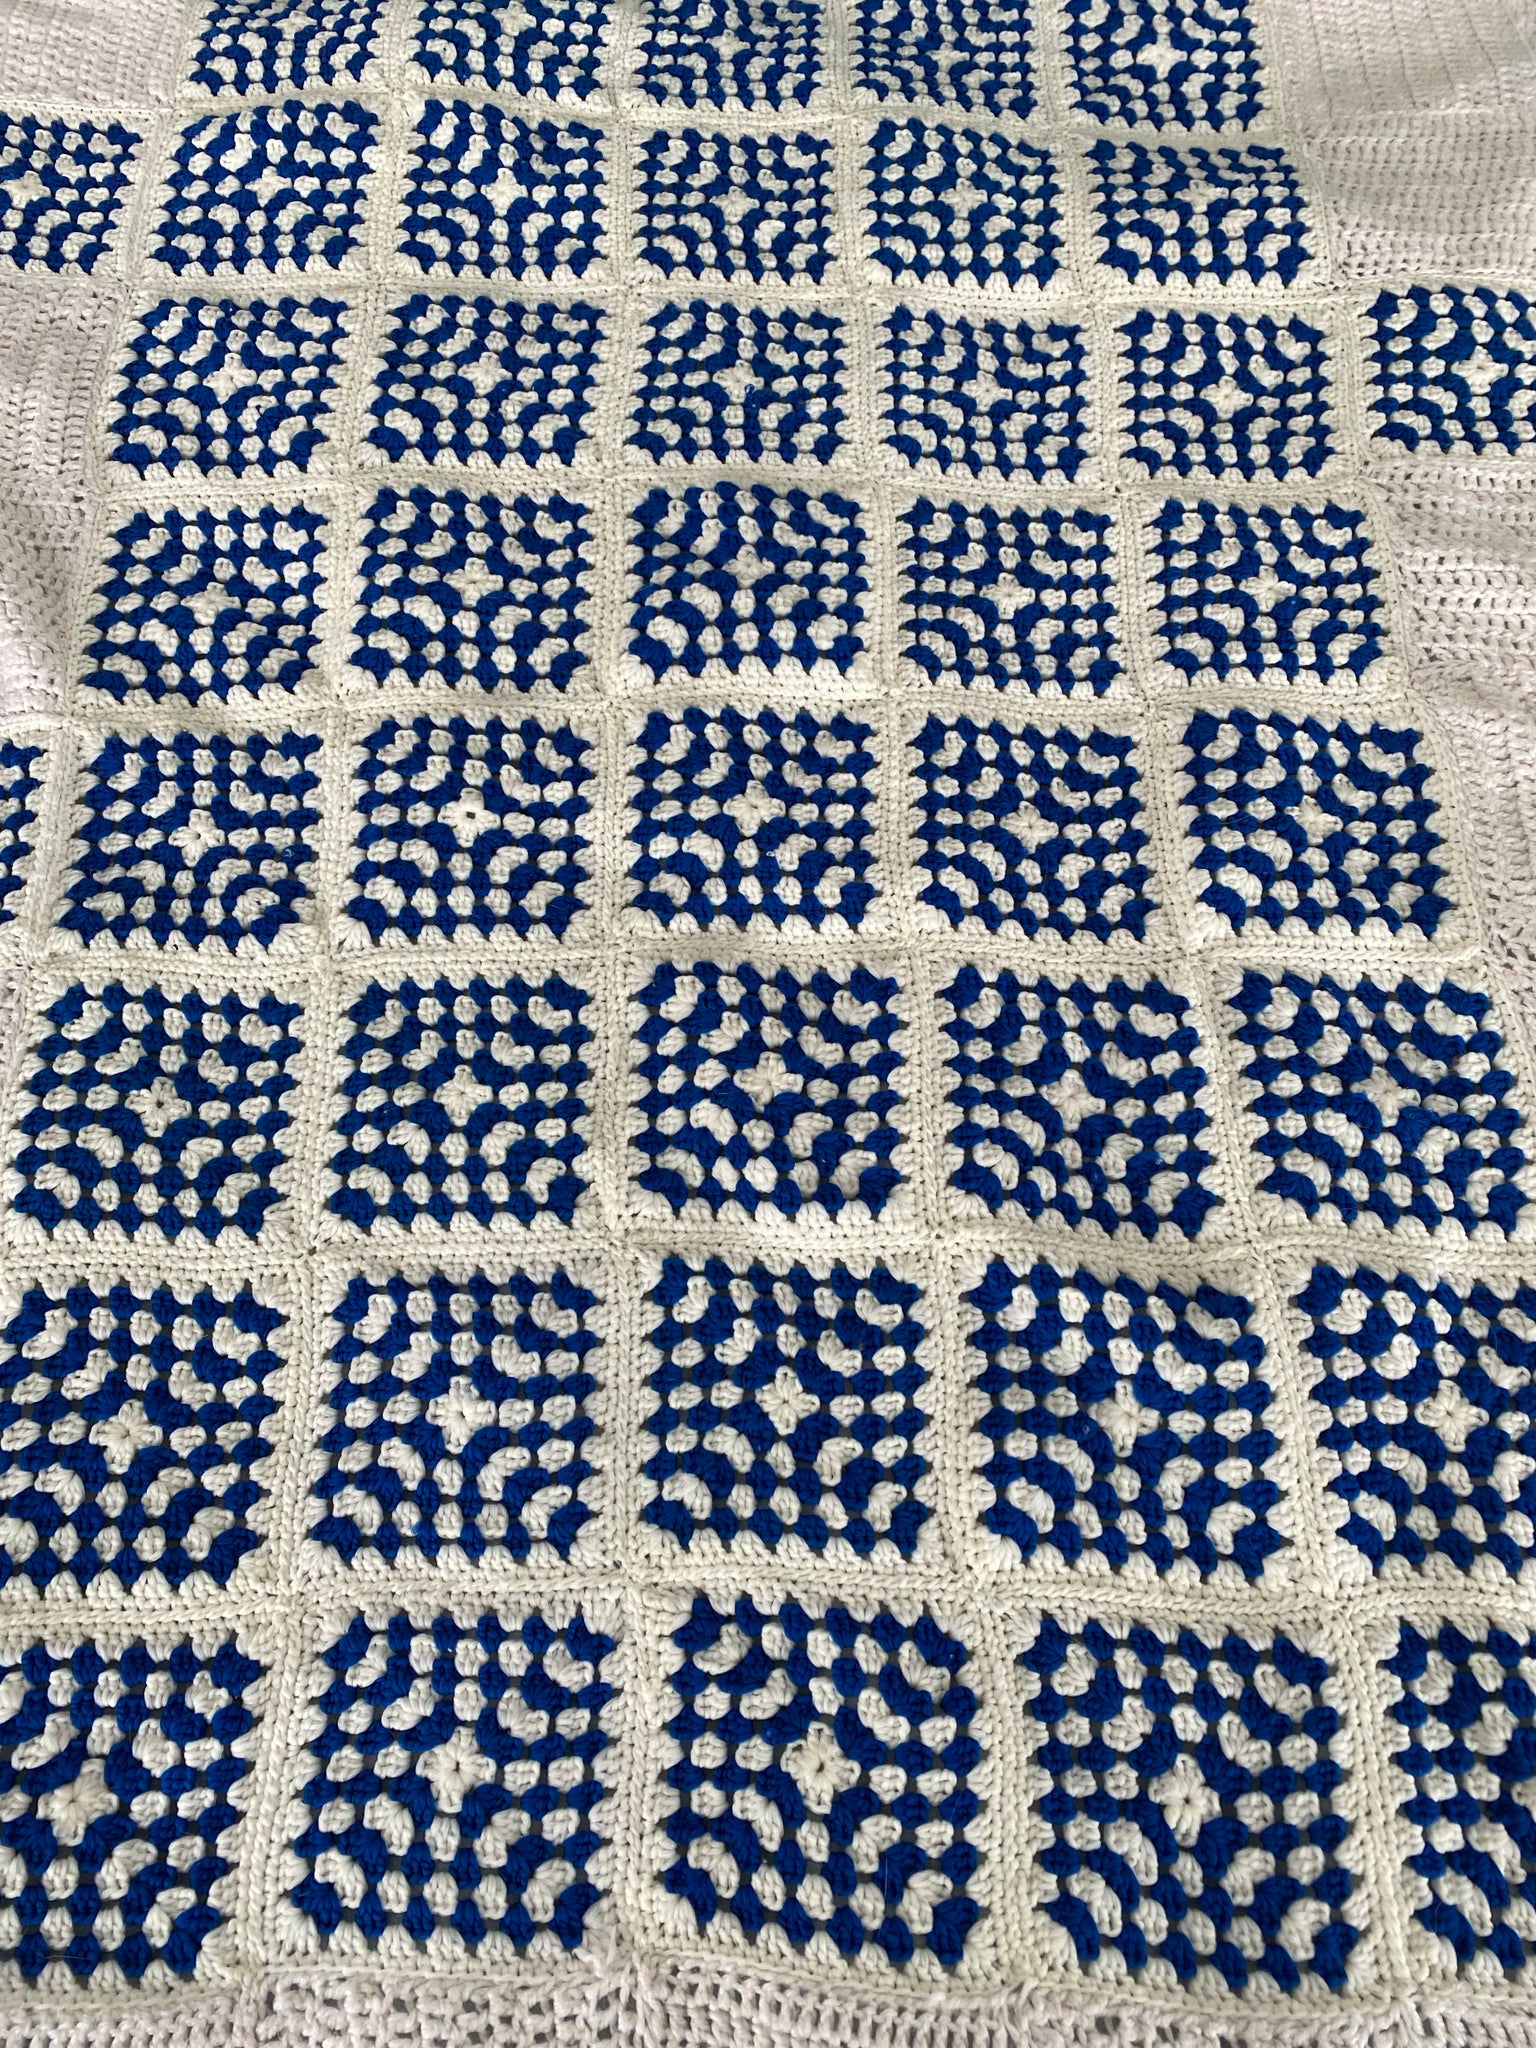 King size Greek style crochet blanket